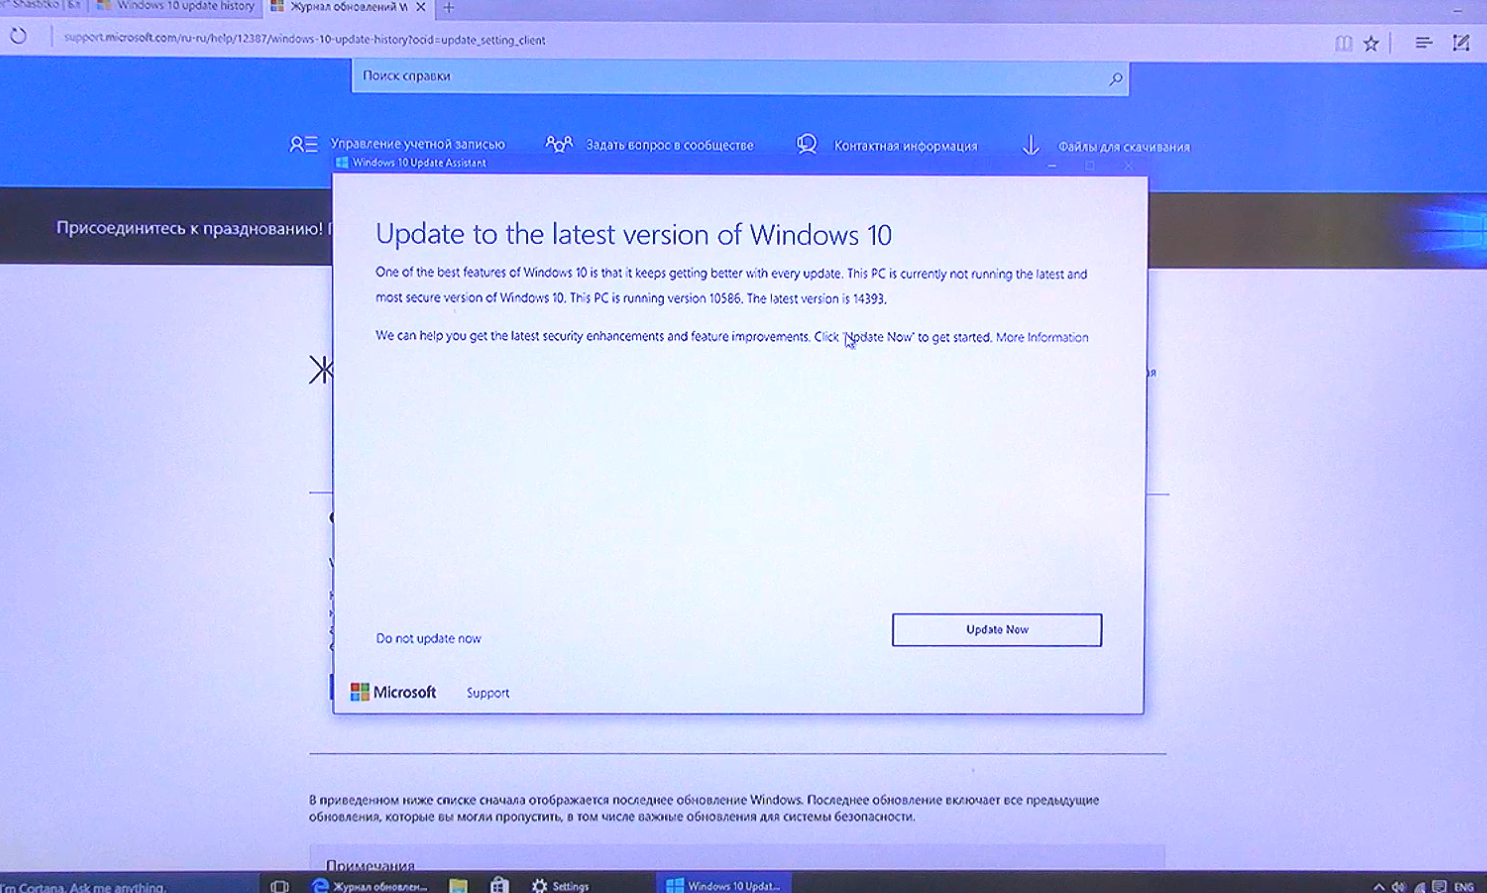 Обновление с windows 7 до windows 11 навсегда удалит файлы пользователей - cnews